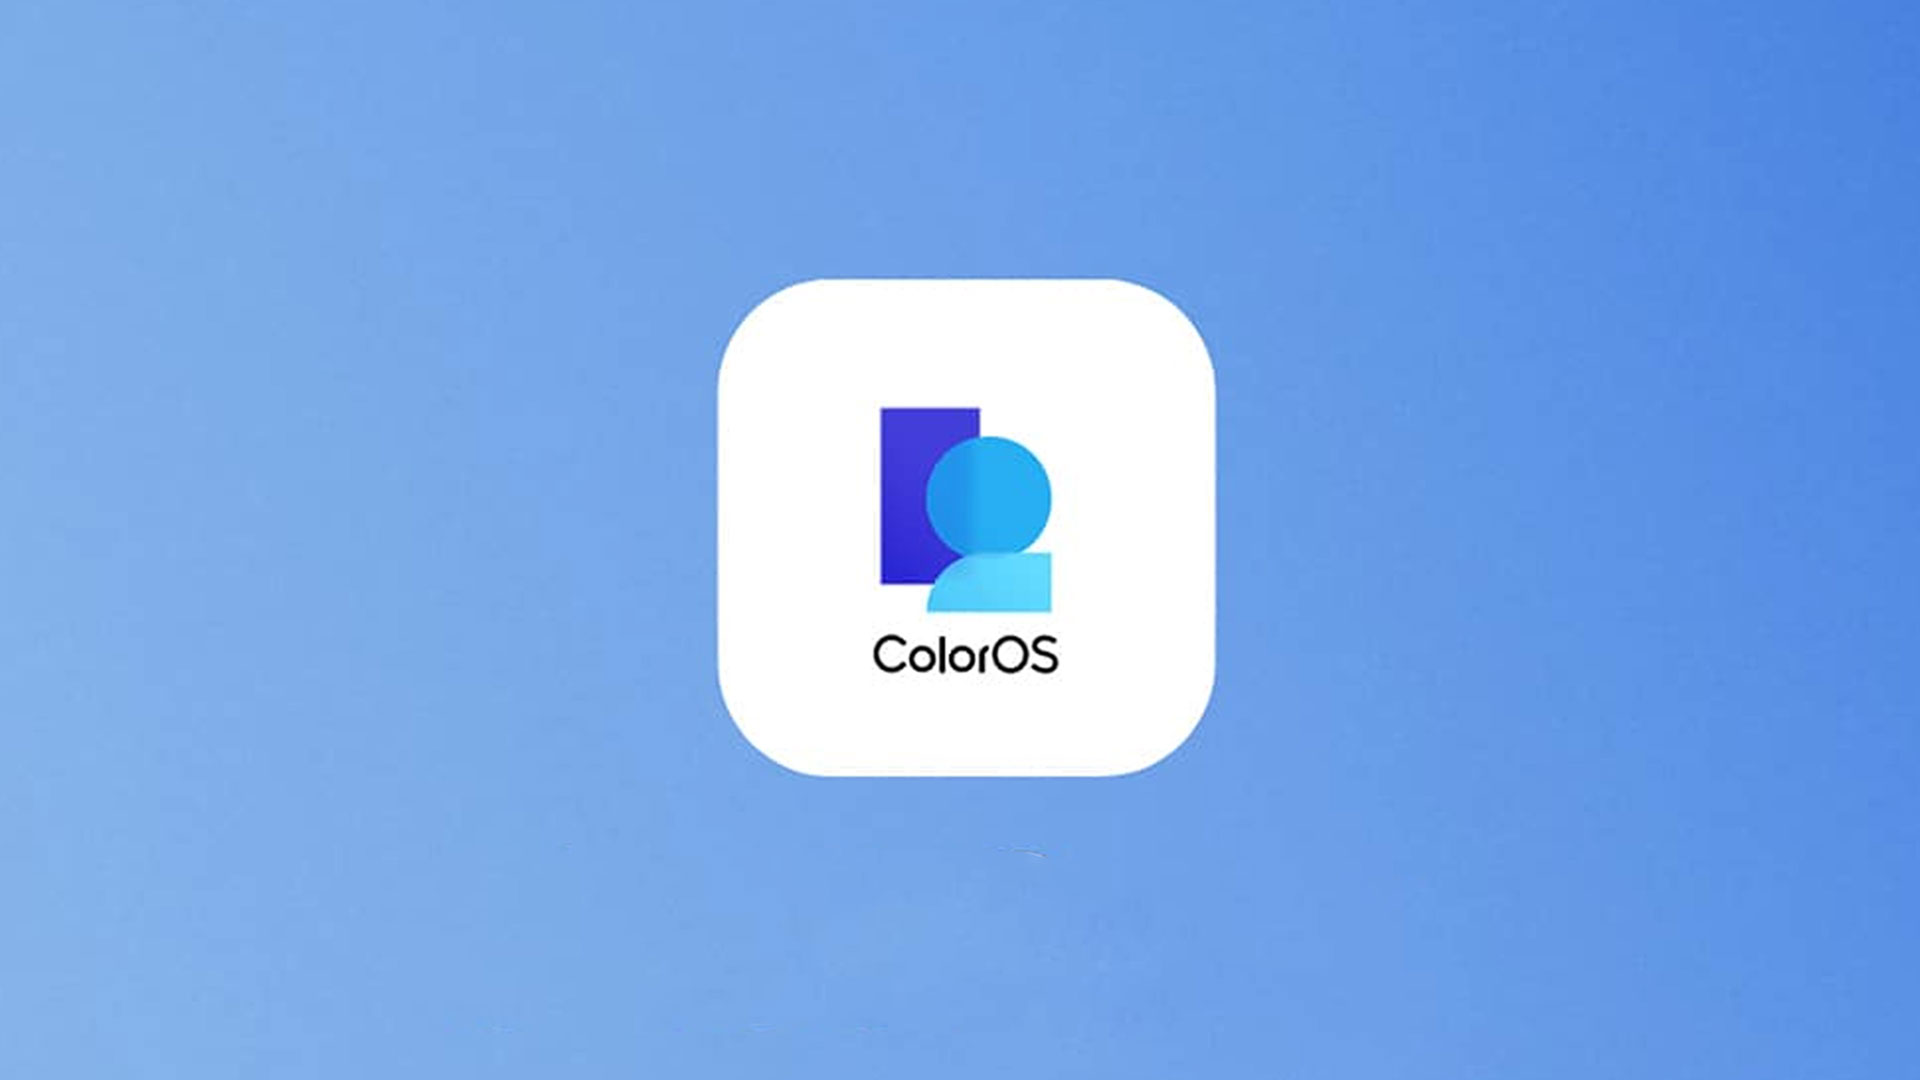 Cztery popularne smartfony OPPO otrzymują stabilne oprogramowanie ColorOS 12 na Androida 12